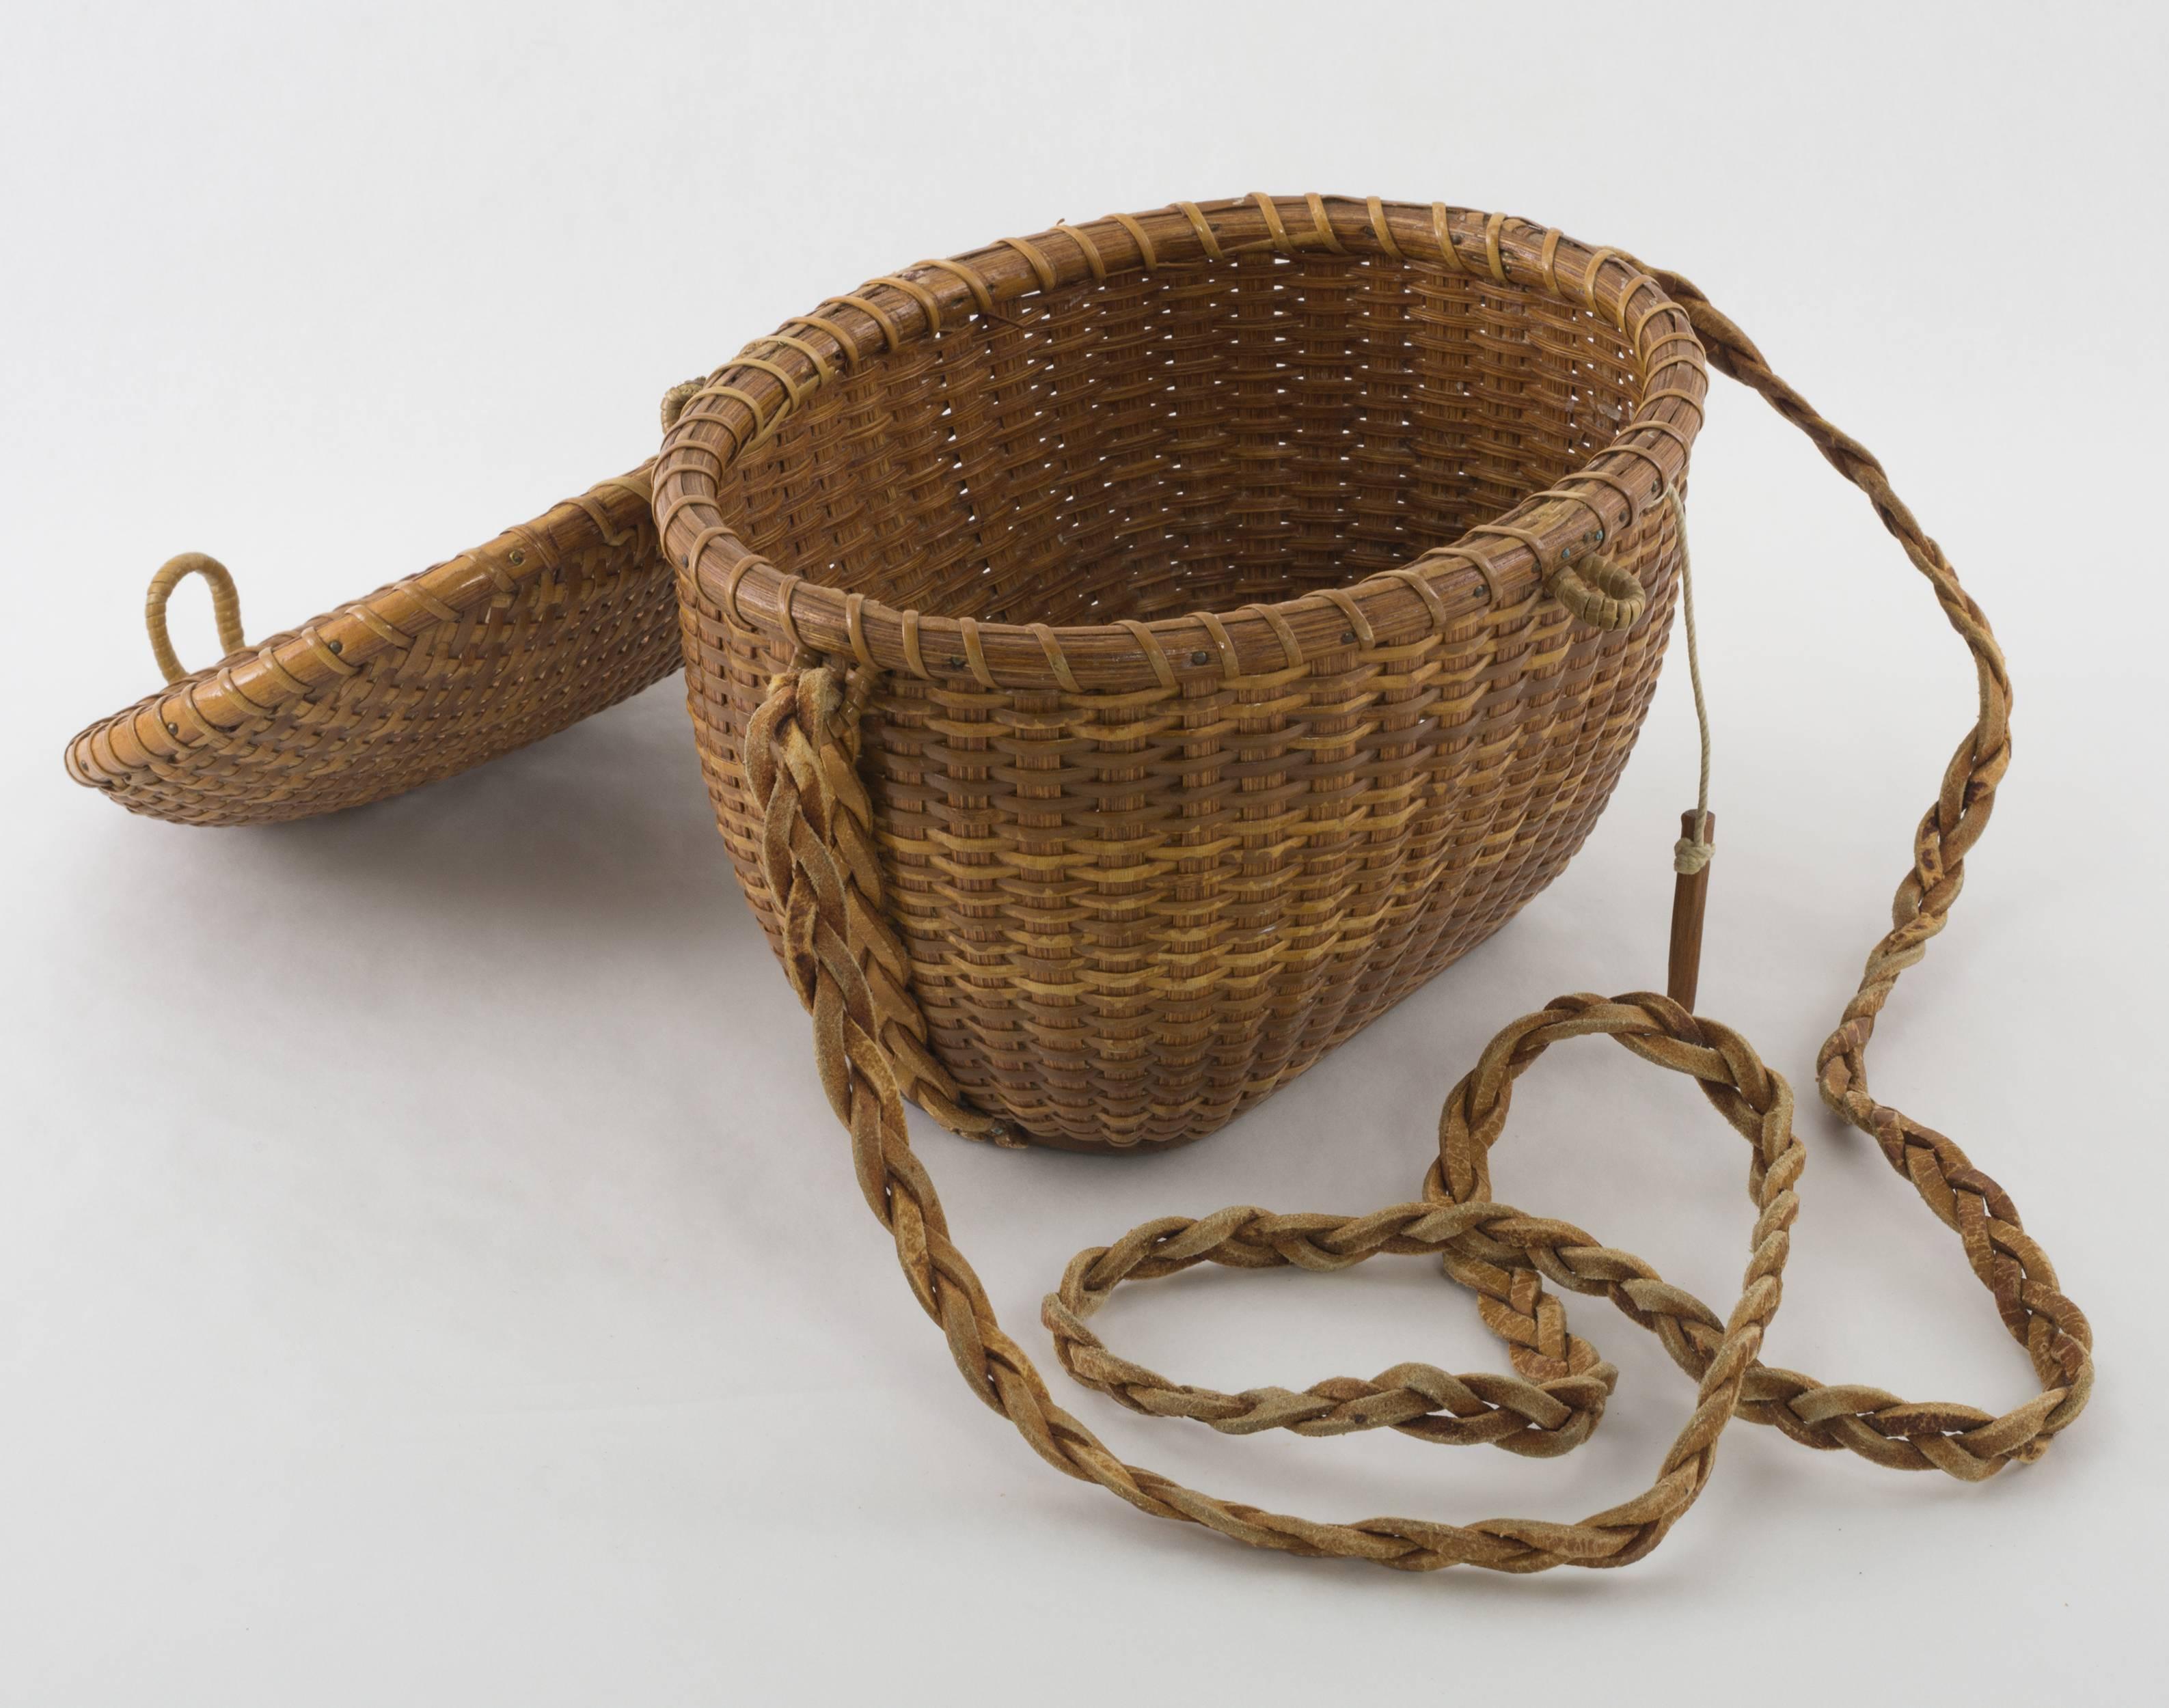 Folk Art Early Nantucket Friendship Basket by Jose Formosa Reyes